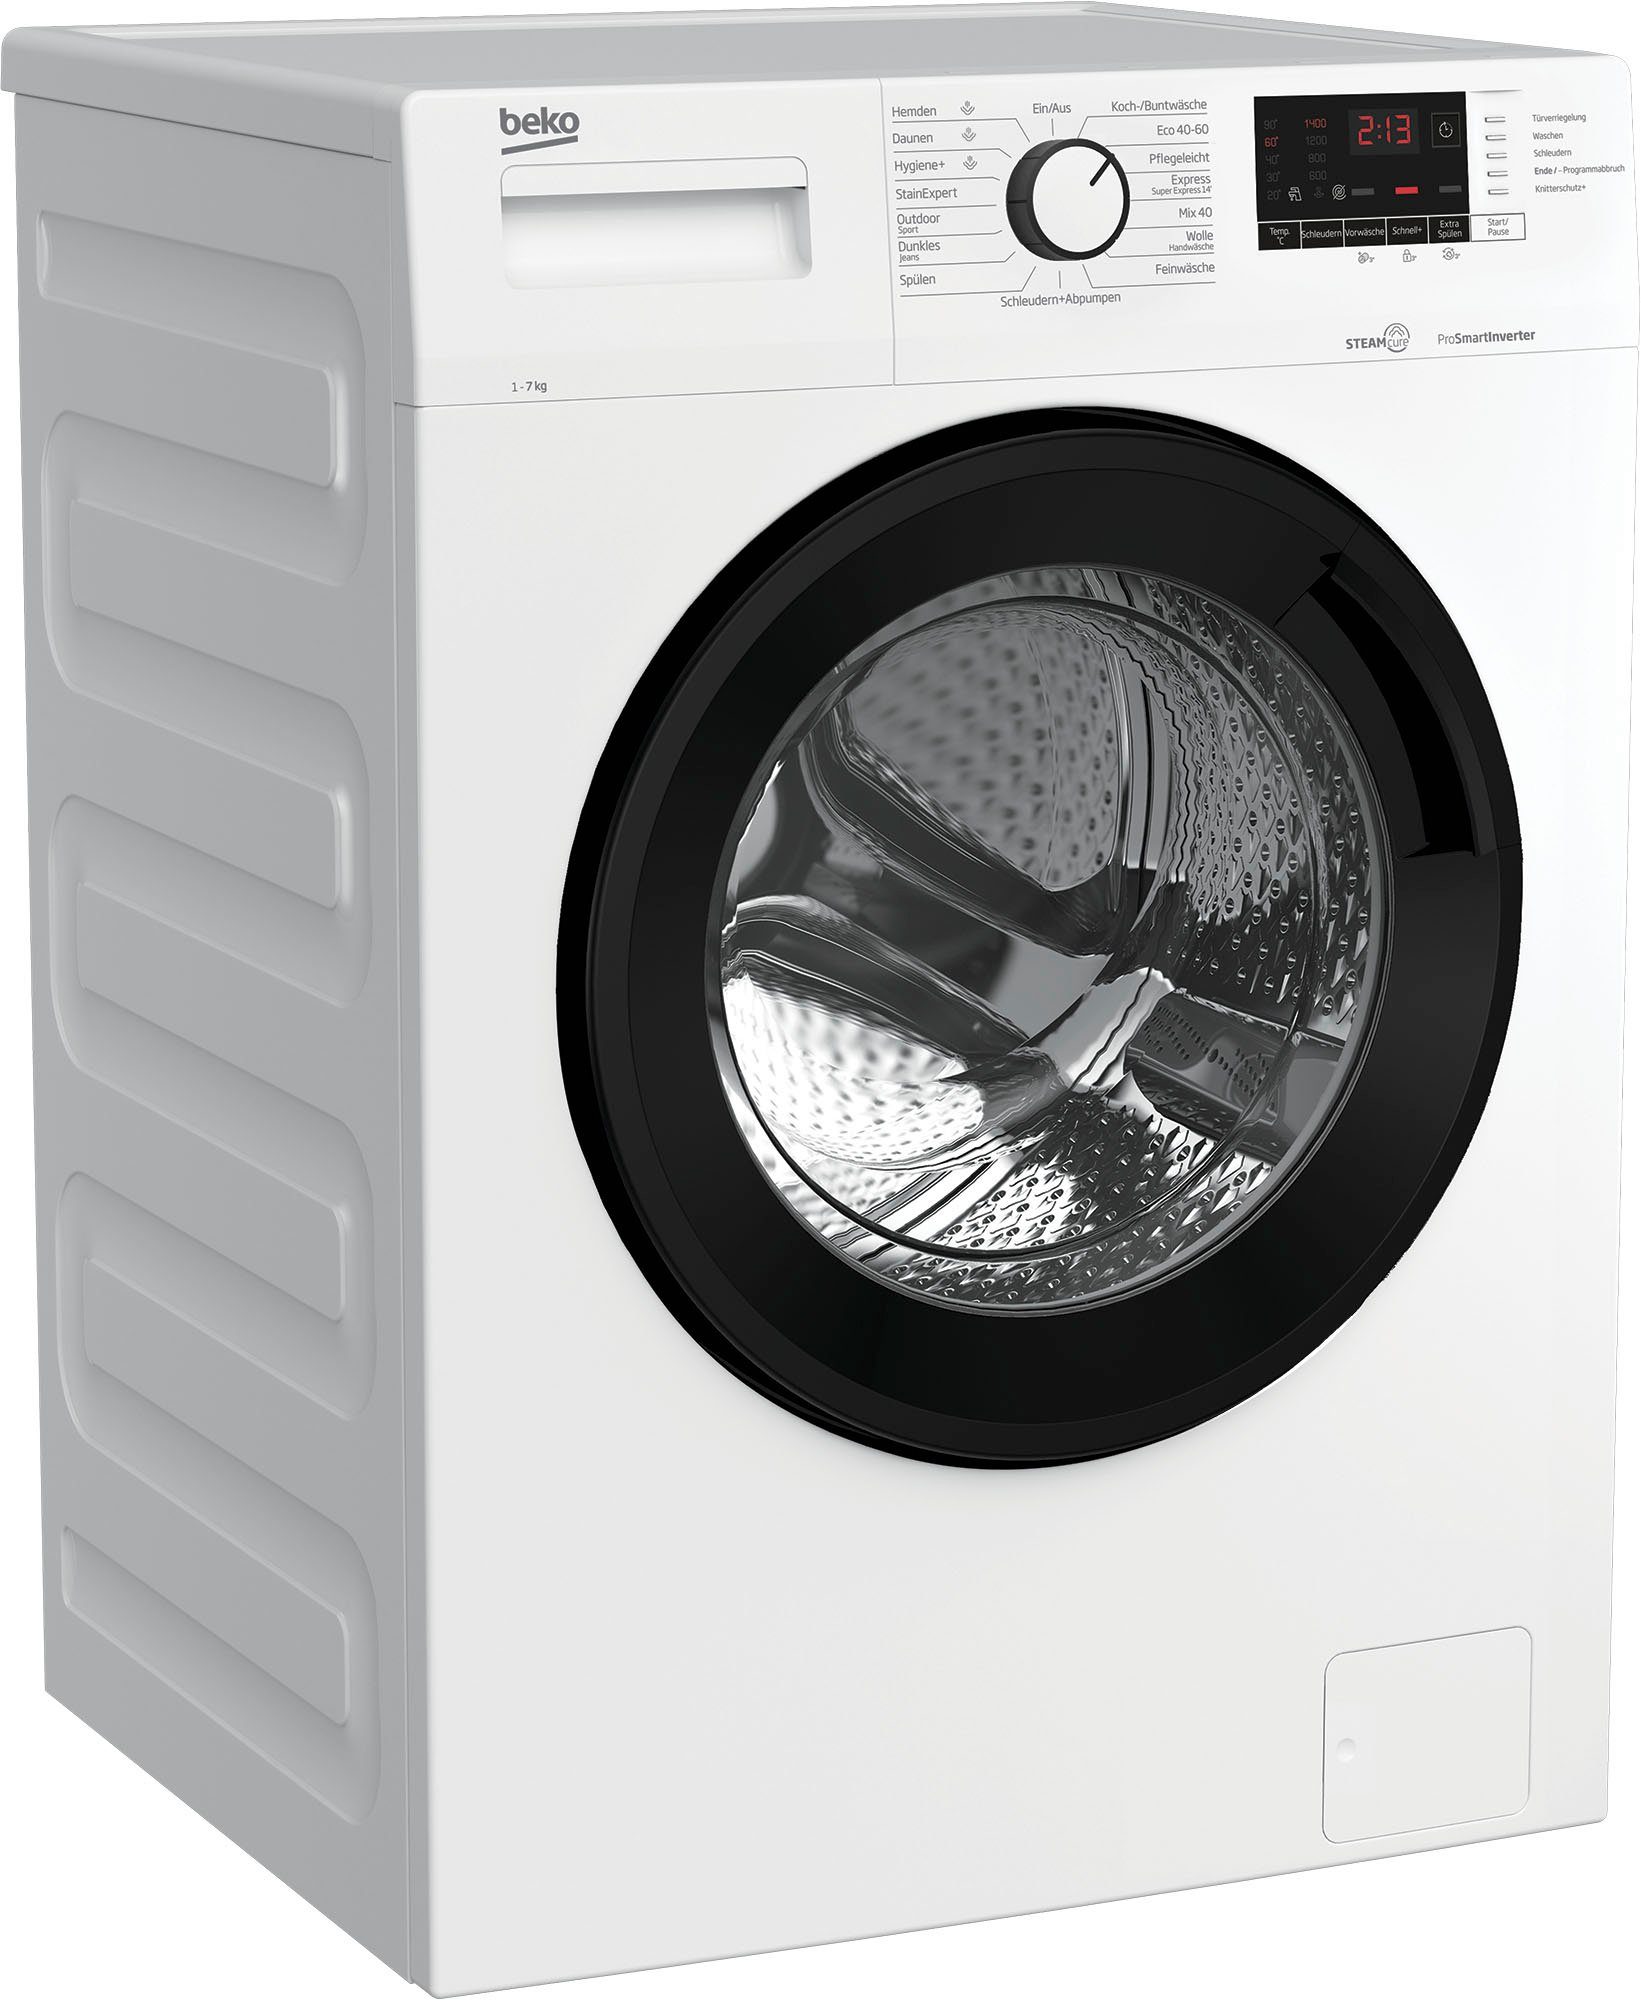 BEKO Waschmaschine WML71432NPA 7176681300, 1400 kg, 7 U/min